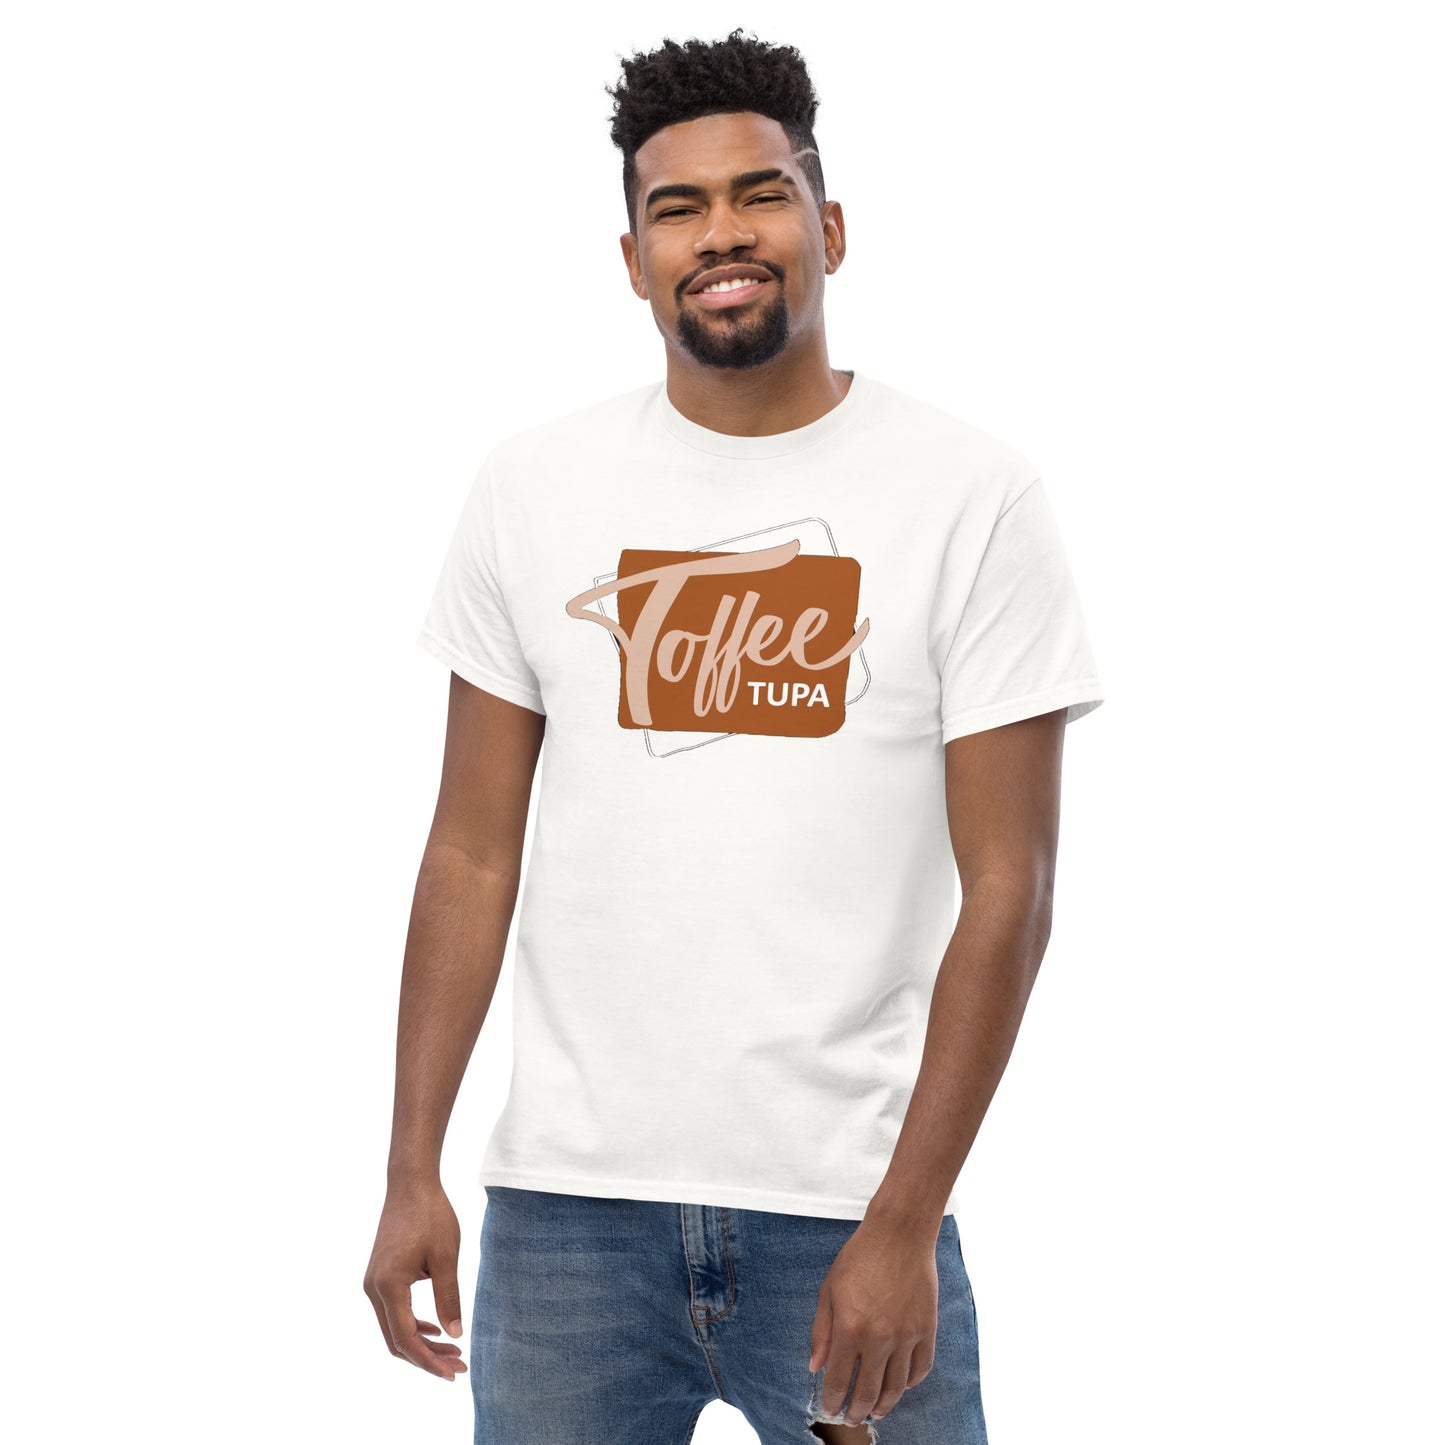 "Toffeetupa" classic t-paita, printtaus edessä